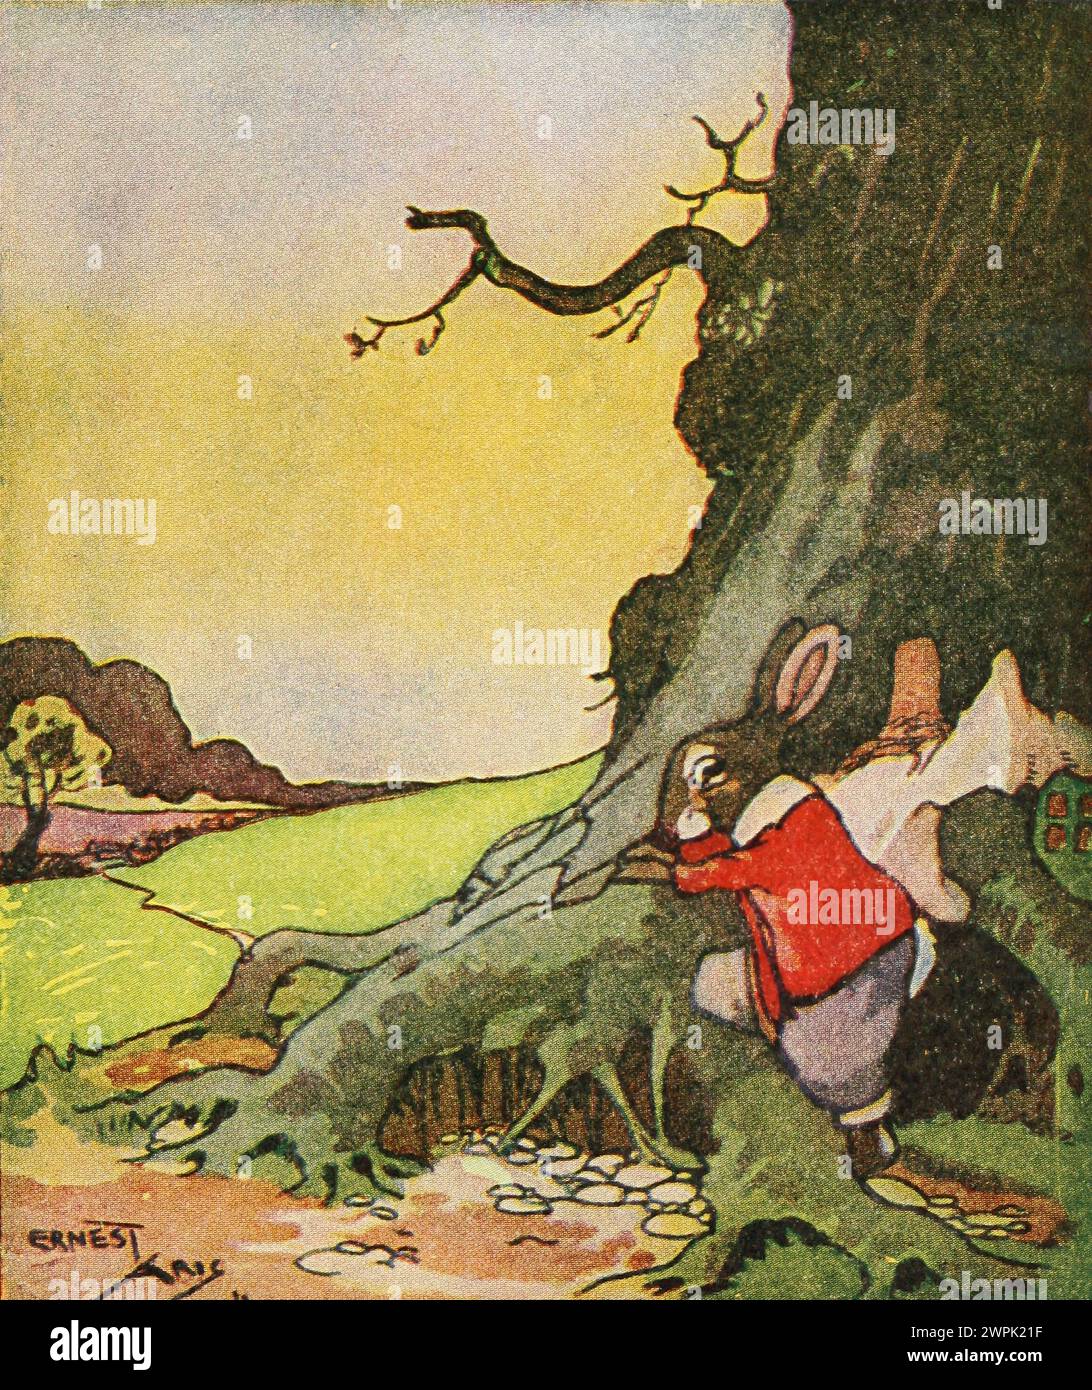 Peter Rabbit and His ma di Louise A Field, illustrato da Virginia Albert; basato sui personaggi di Beatrix Potter Peter Rabbit fugge a causa delle rigide regole di sua madre, ma non va molto lontano perché viaggia in cerchio. Foto Stock